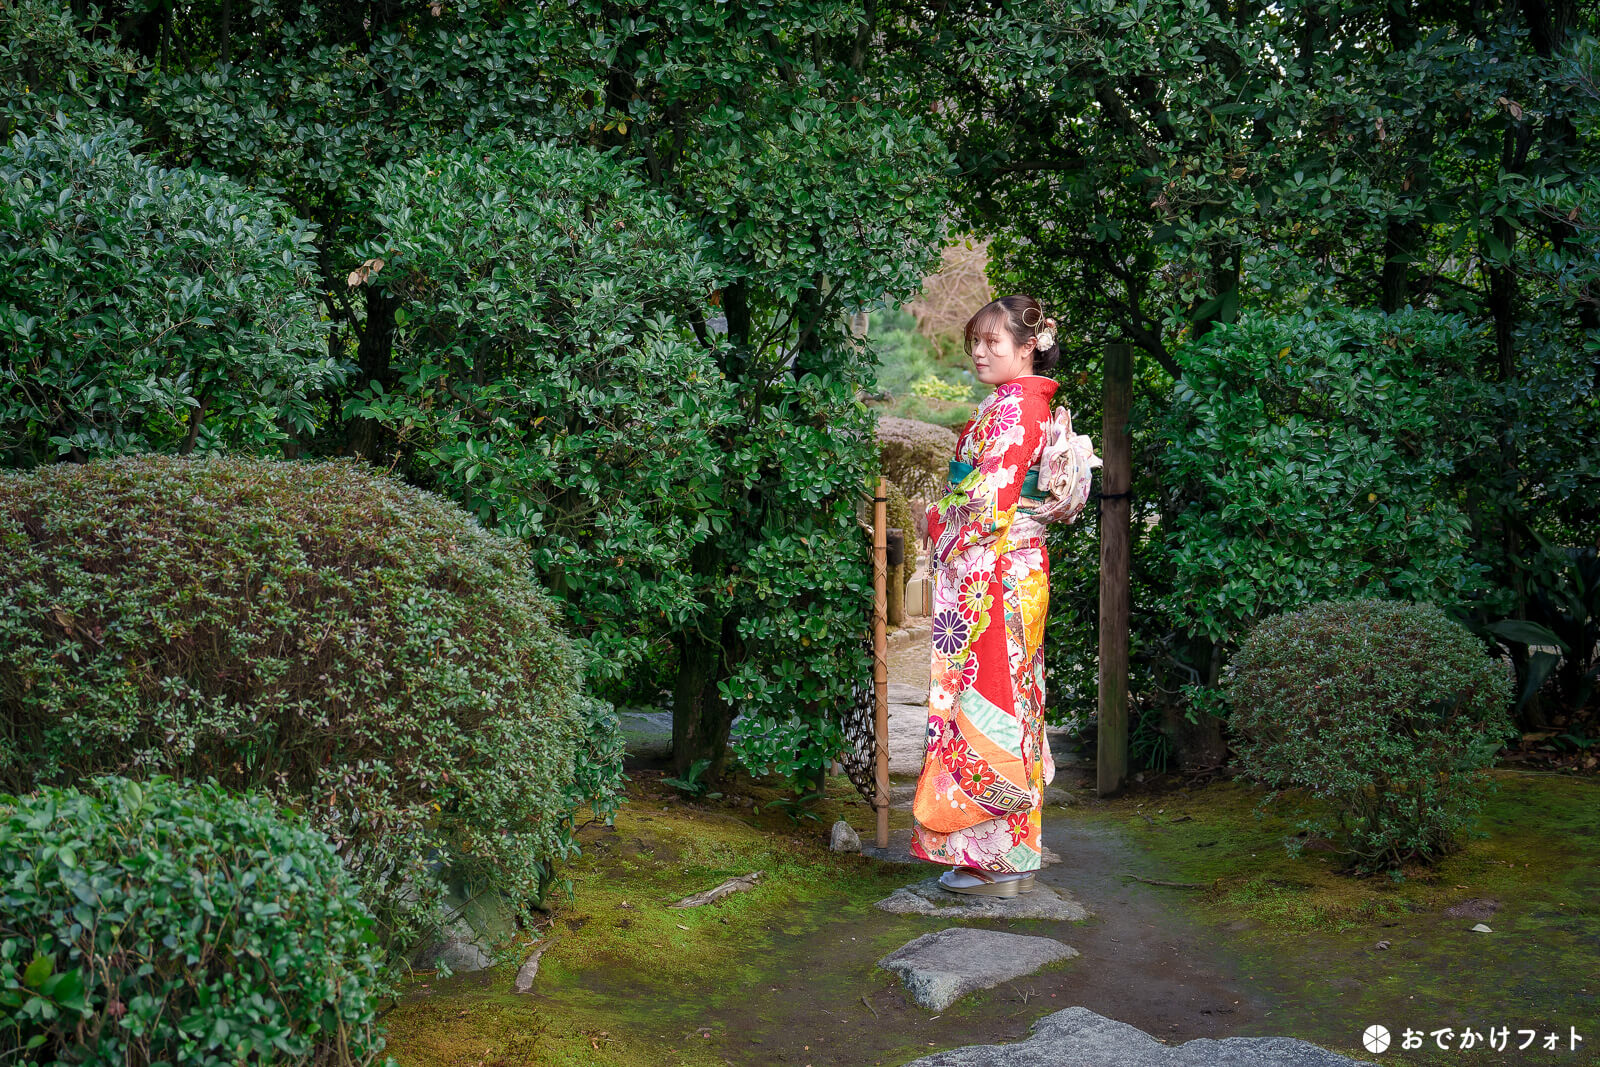 大濠公園日本庭園で成人式の後撮りロケーション撮影